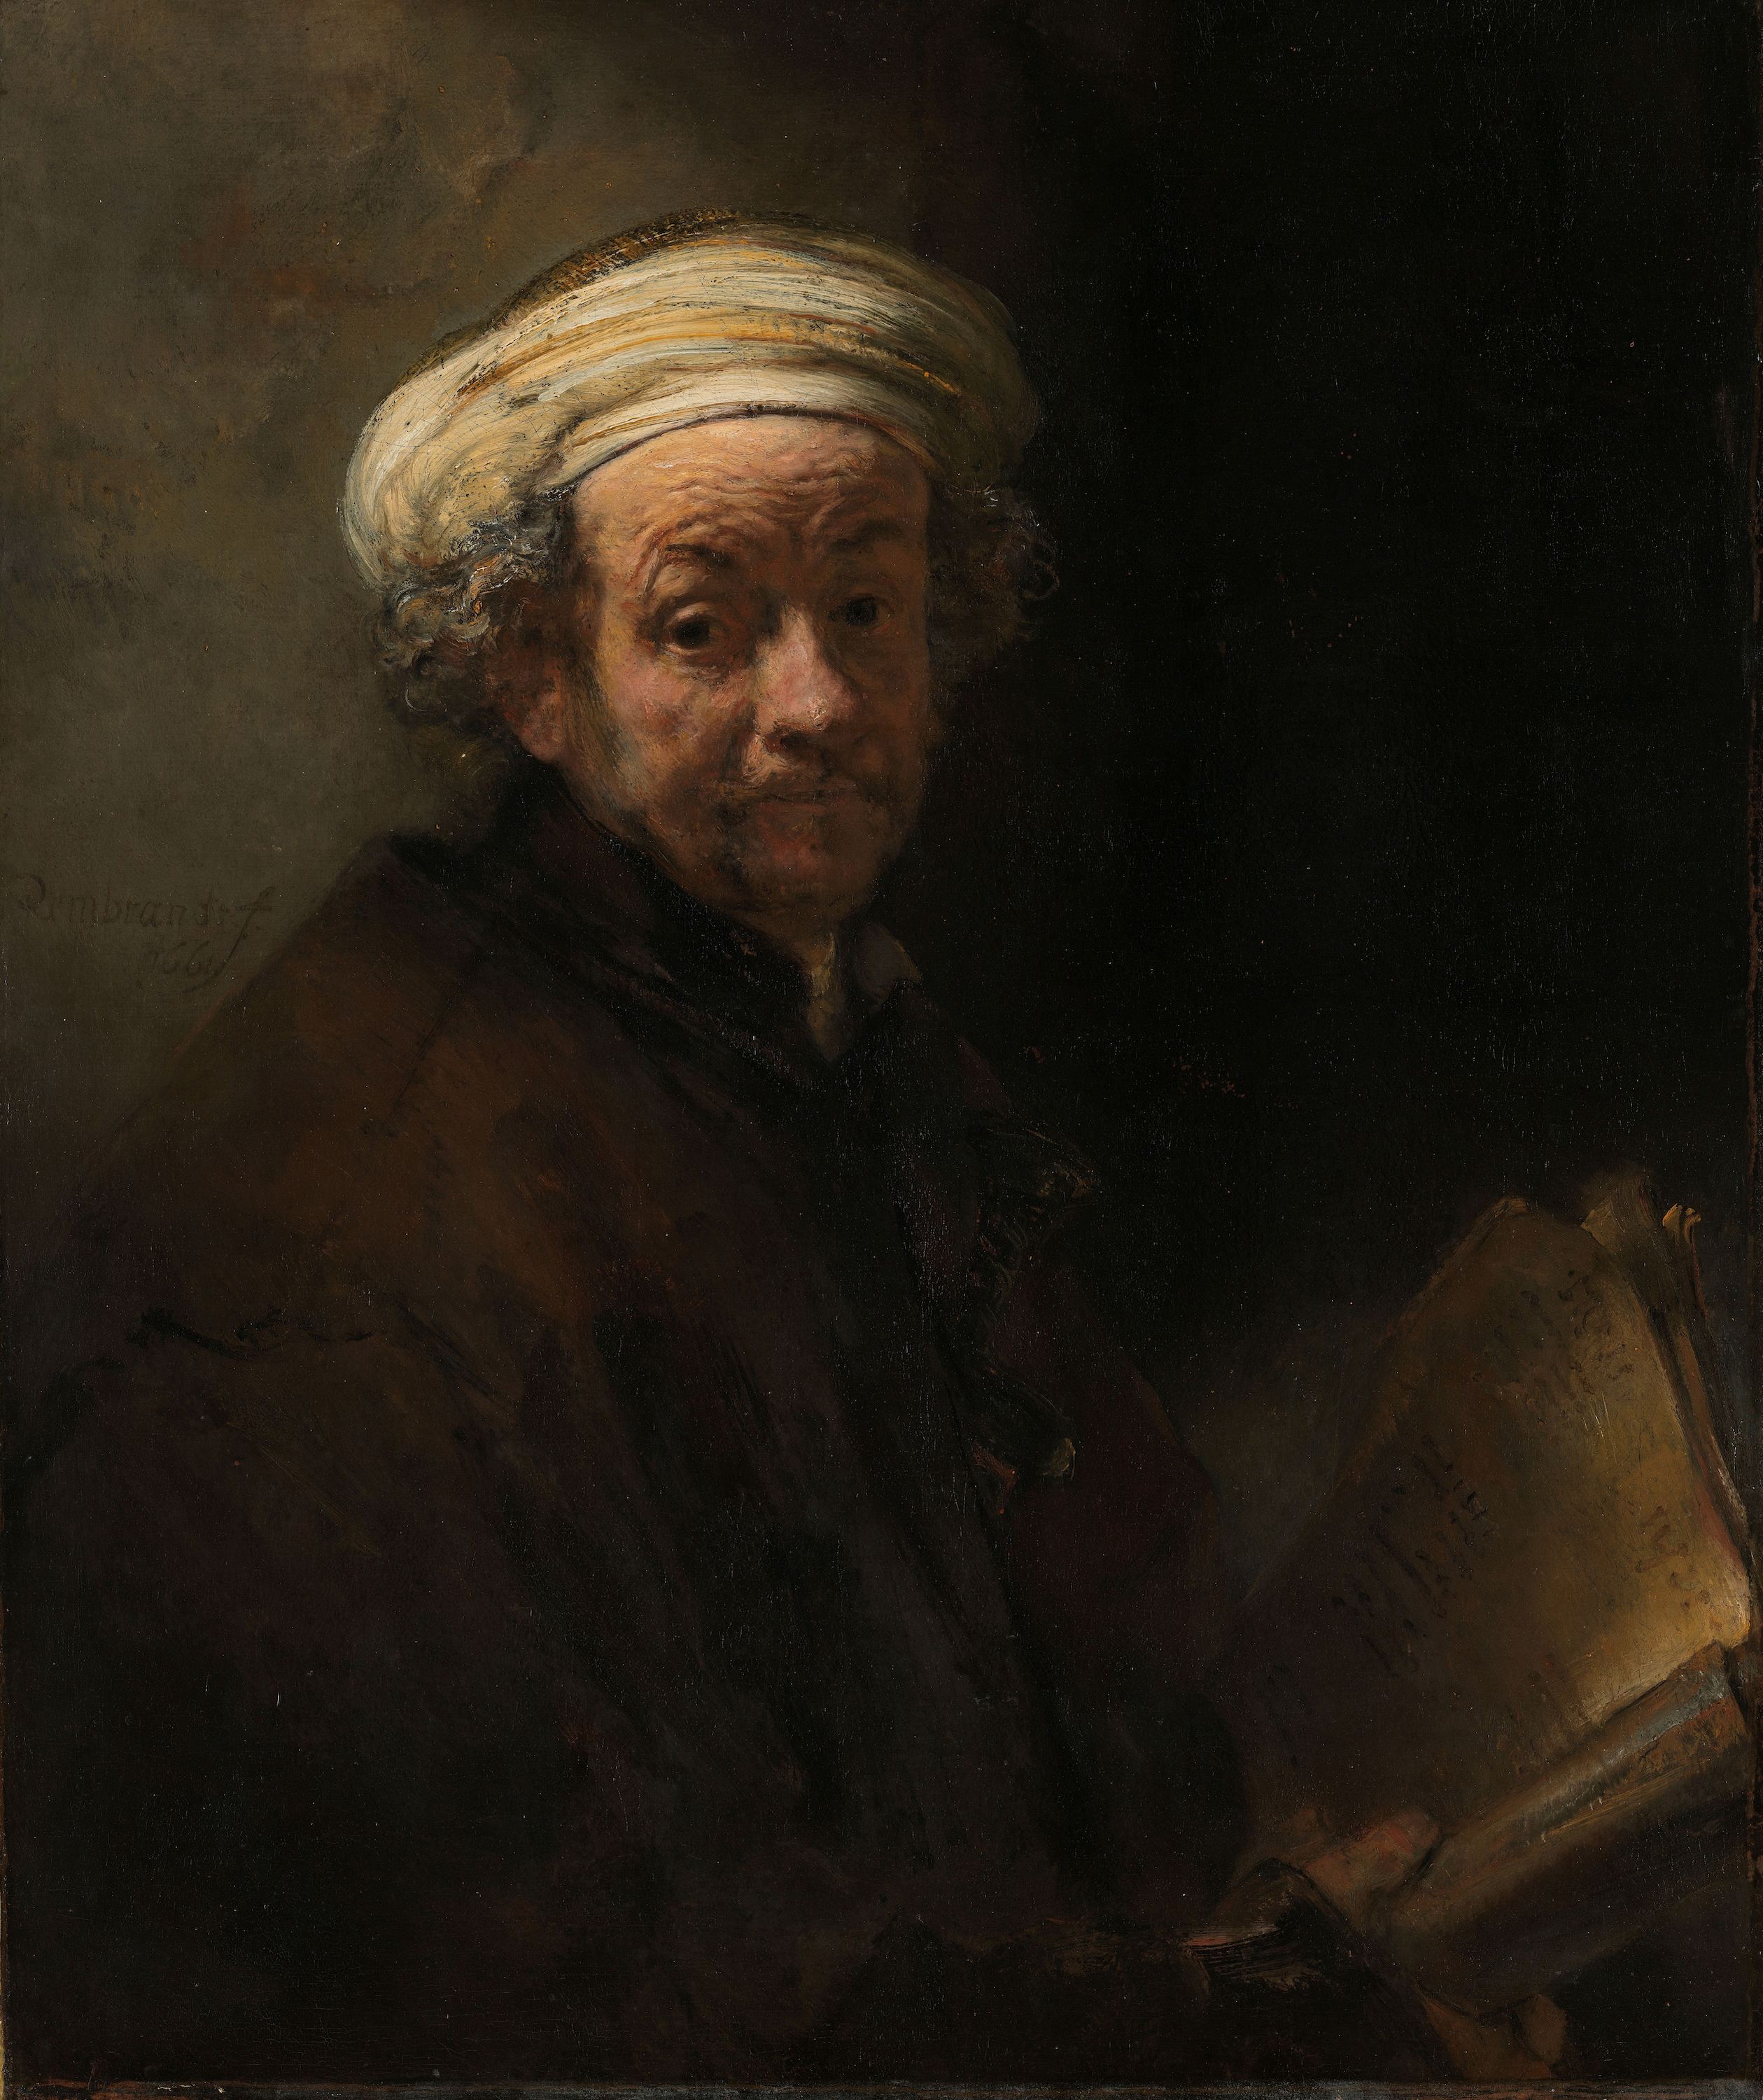 بورتريه شخصية في شخصية بولس الرسول by Rembrandt van Rijn - 1661 م - 91 × 77 سم 